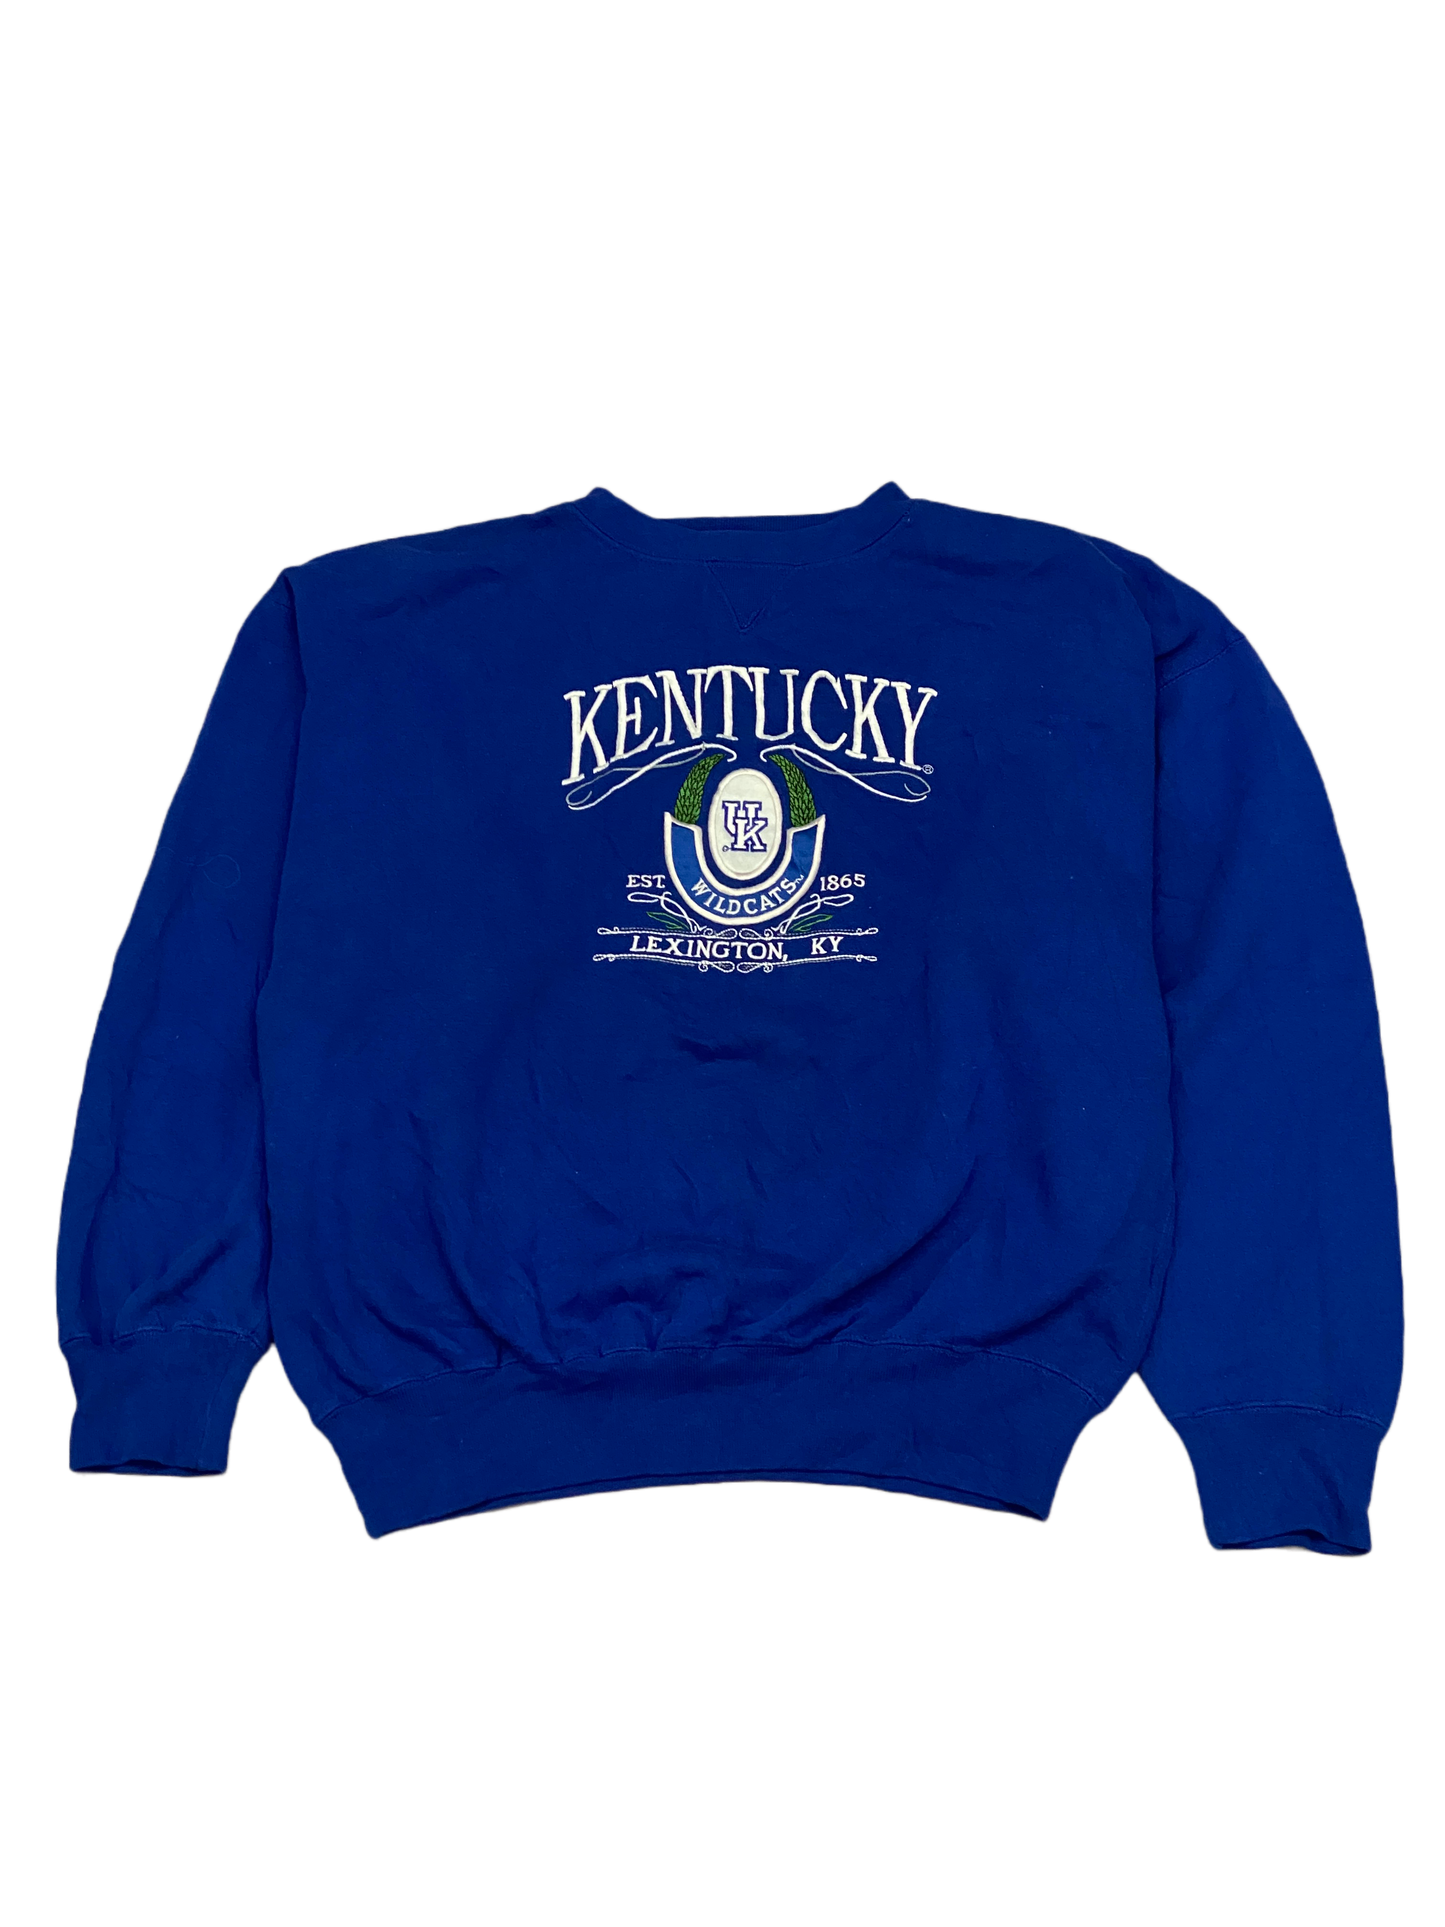 Vintage Kentucky Sweatshirt